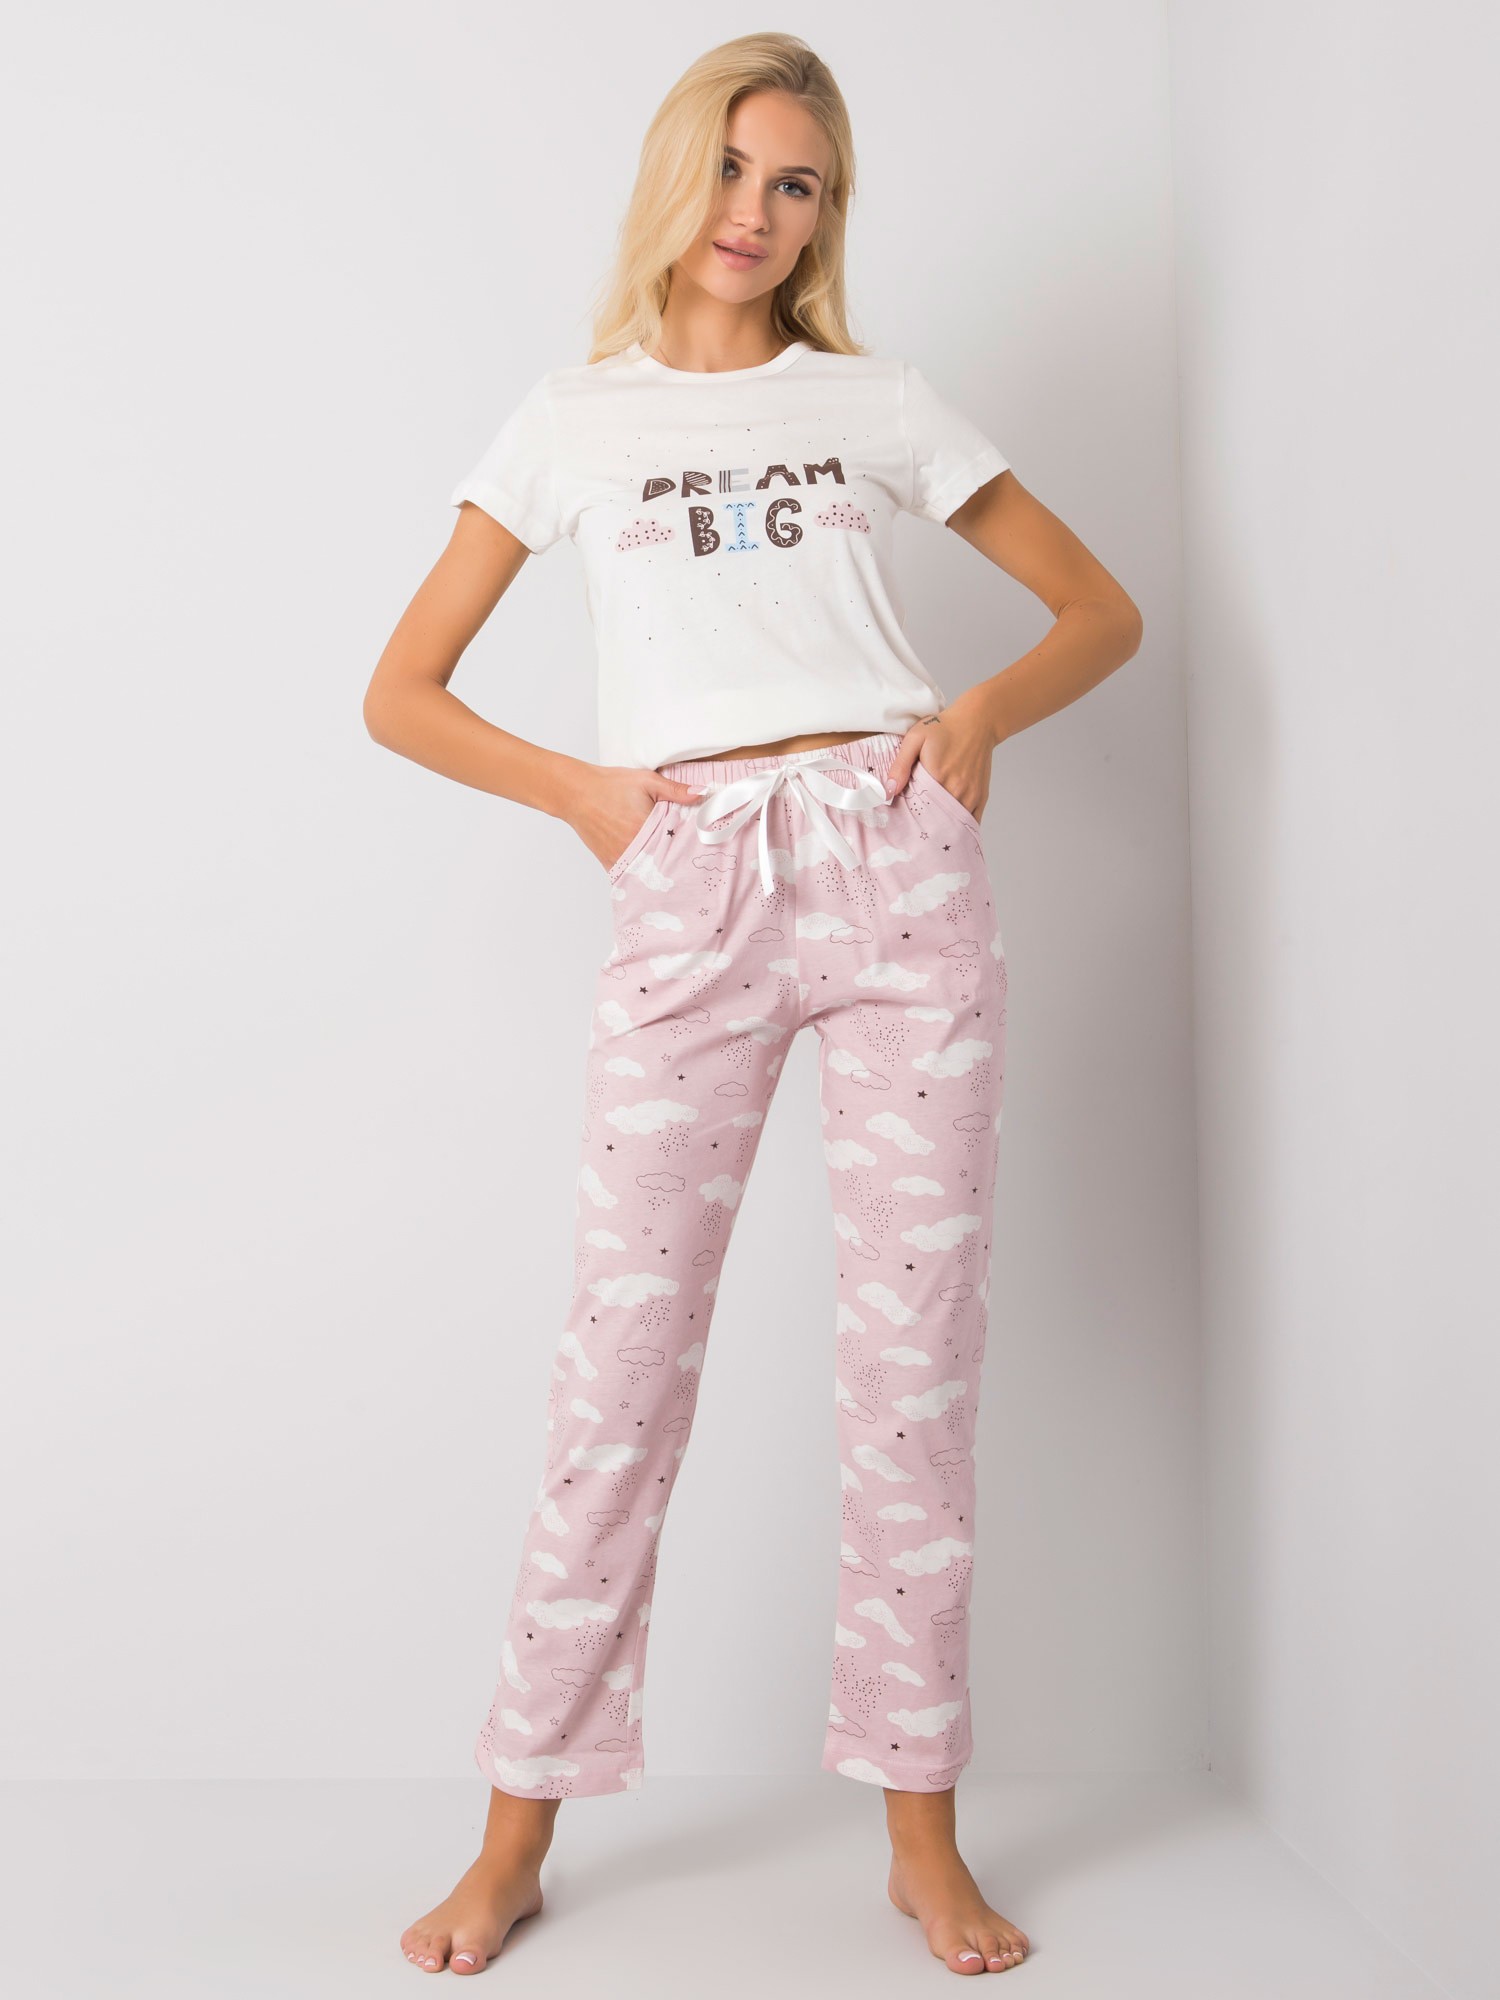 Dámske bielo-ružové pyžamo - S